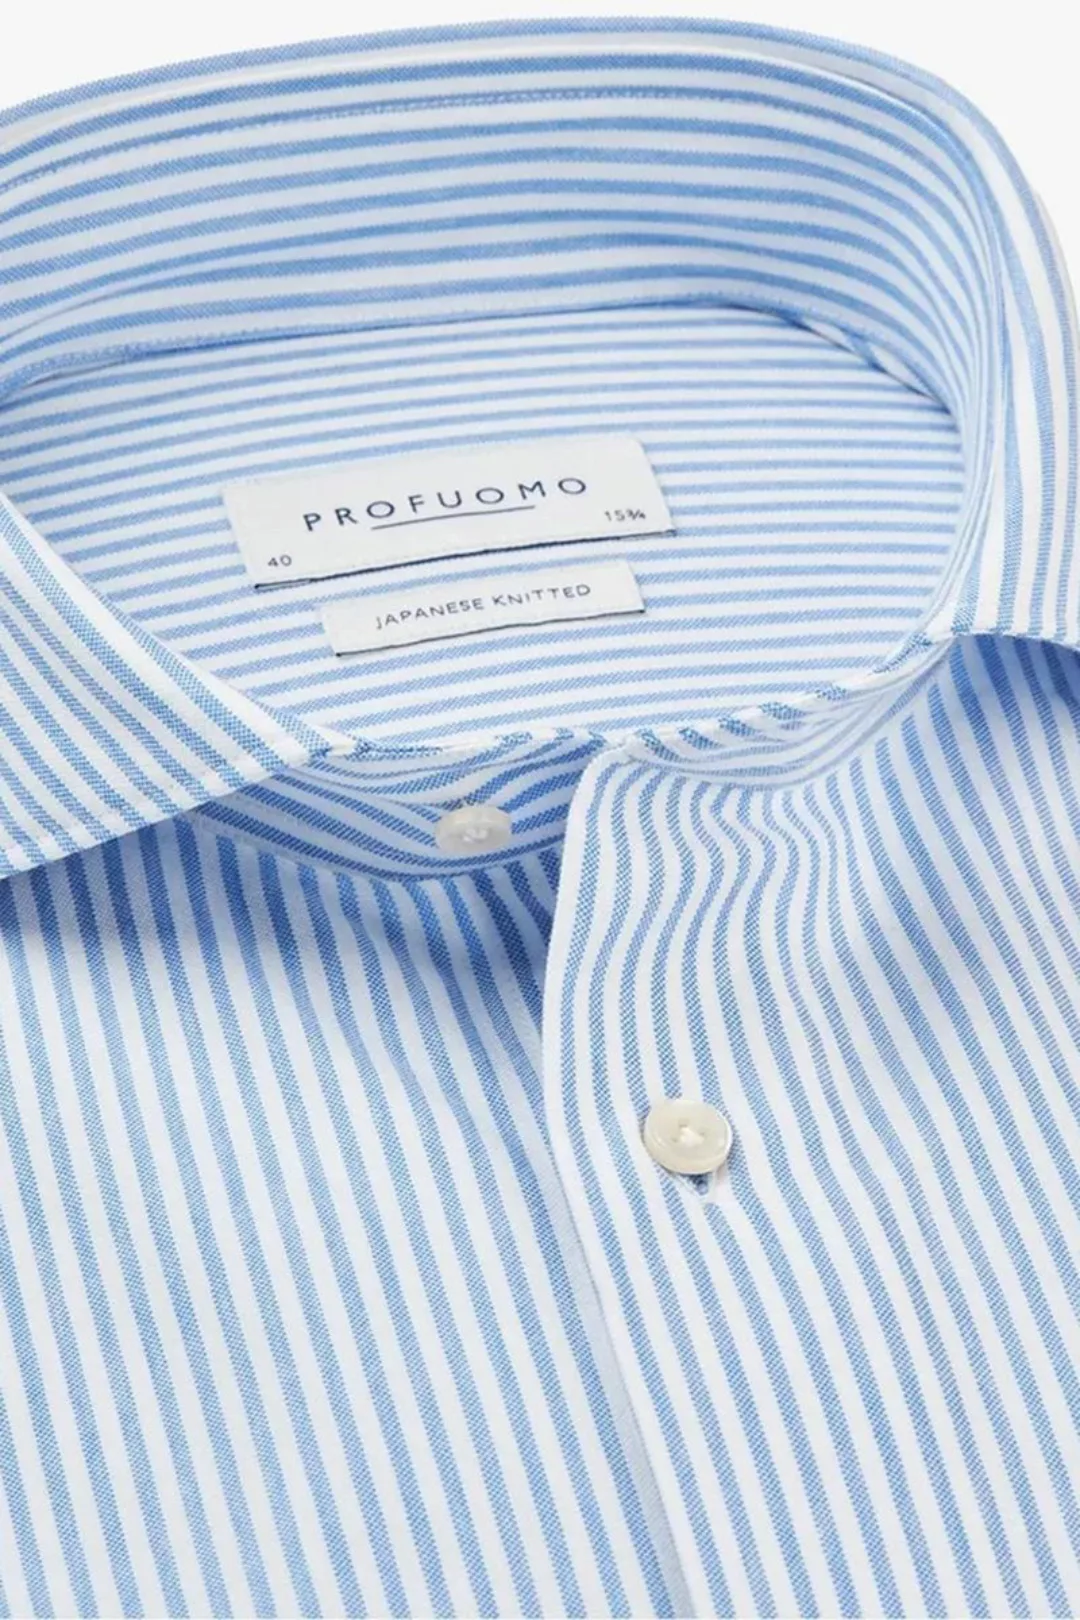 Profuomo Hemd Japanese Knitted Blau Streifen - Größe 37 günstig online kaufen